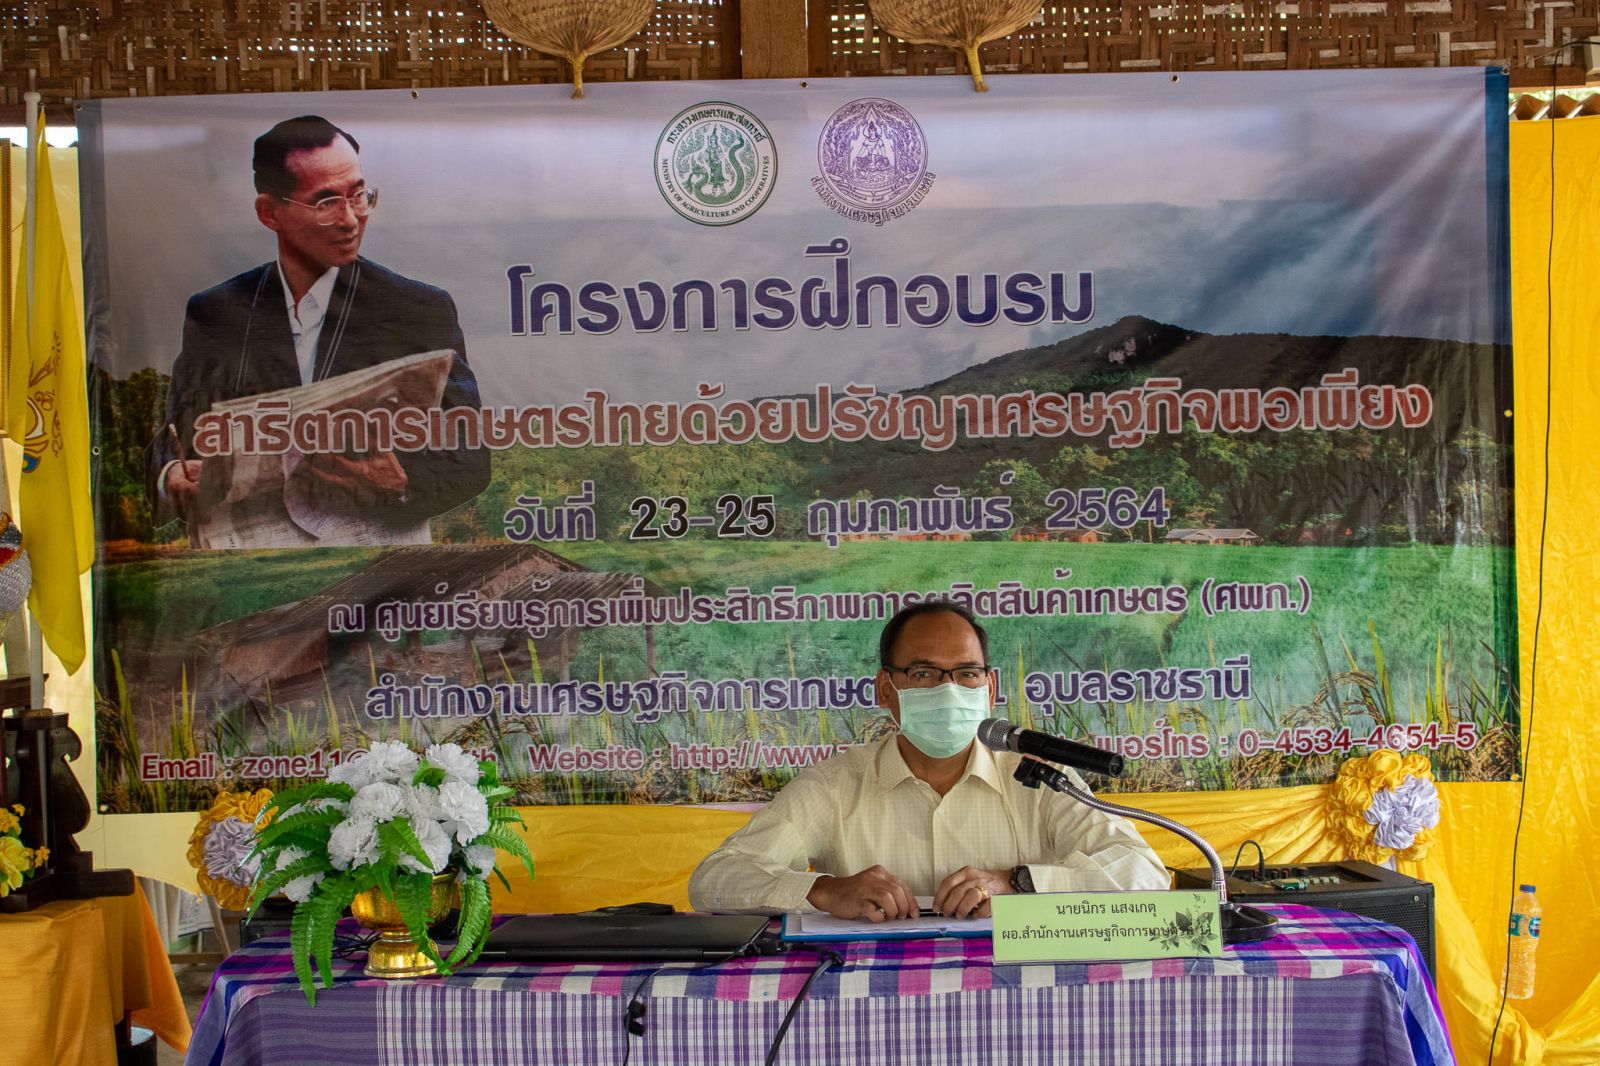 สศท.11 จัดฝึกอบรม กิจกรรมอบรมและสาธิตการเกษตรไทย ครั้งที่ 2